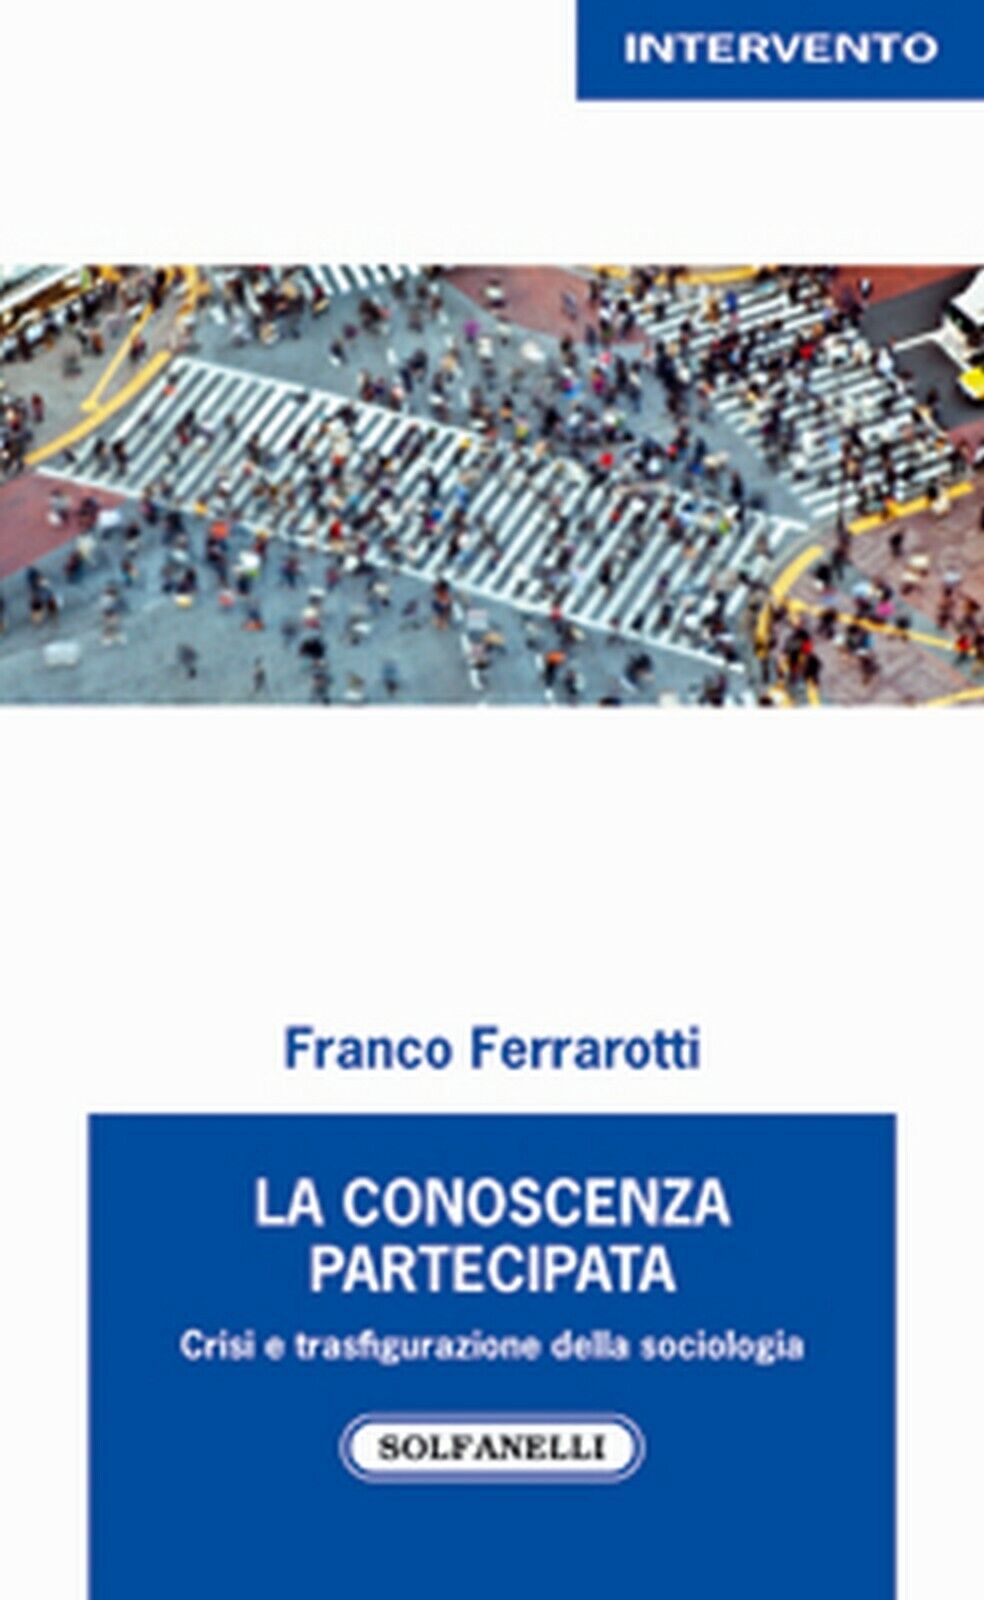 LA CONOSCENZA PARTECIPATA  di Franco Ferrarotti,  Solfanelli Edizioni